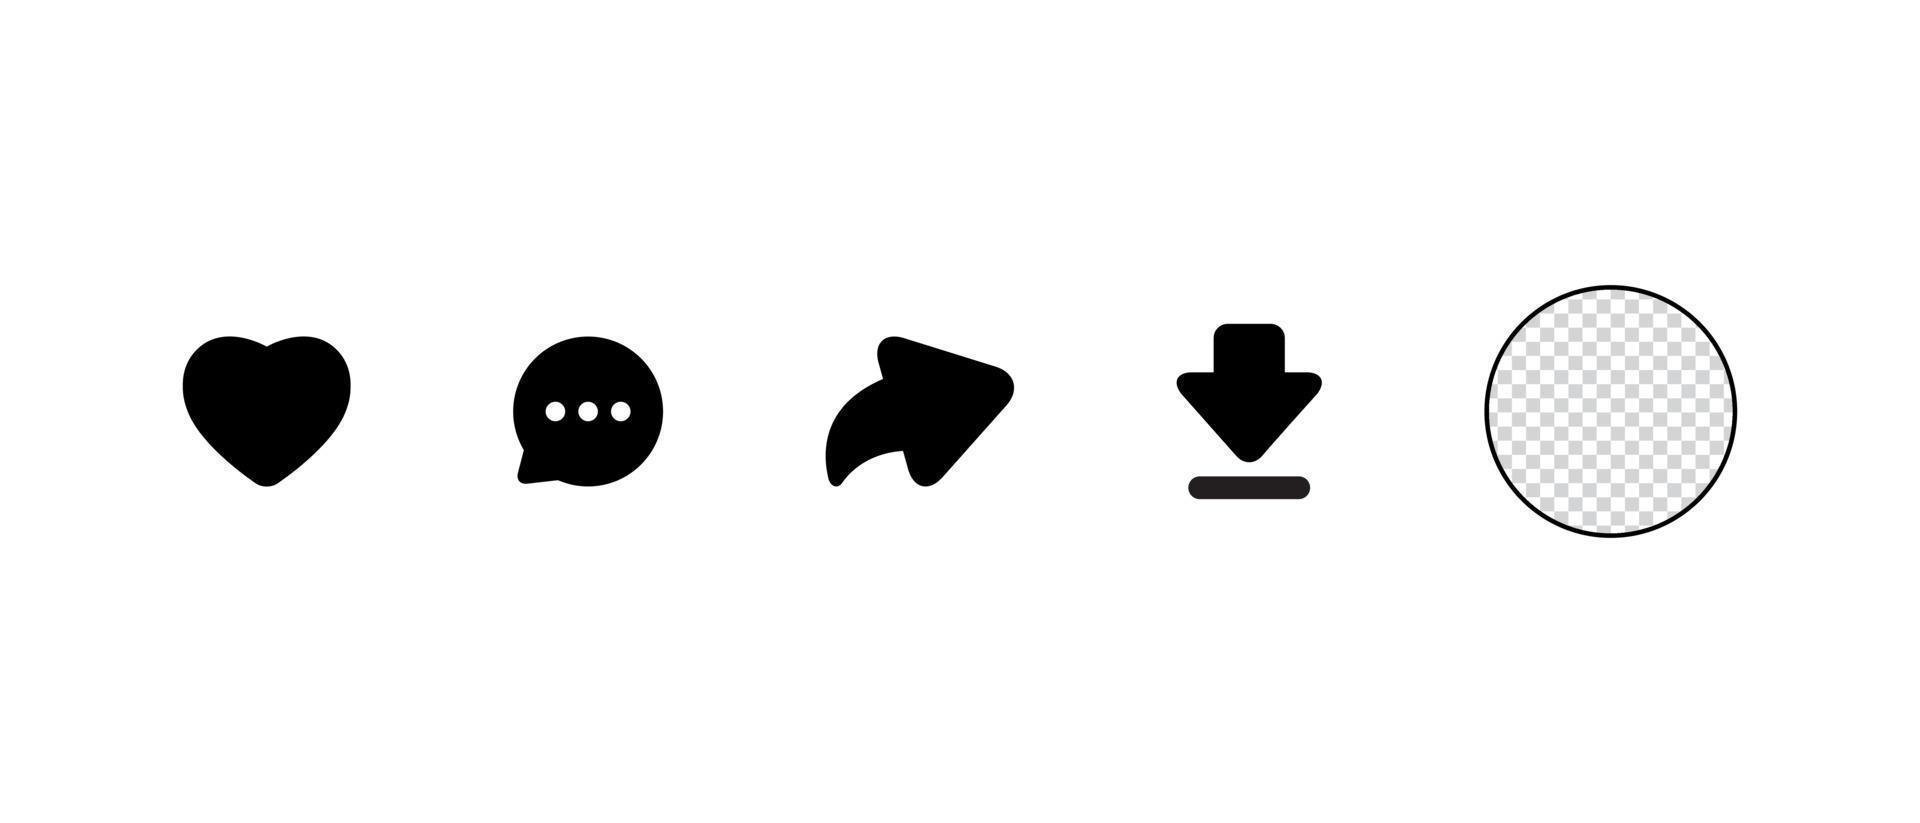 me gusta, comentar, compartir y descargar un conjunto de iconos inspirado en la aplicación de video snack vector